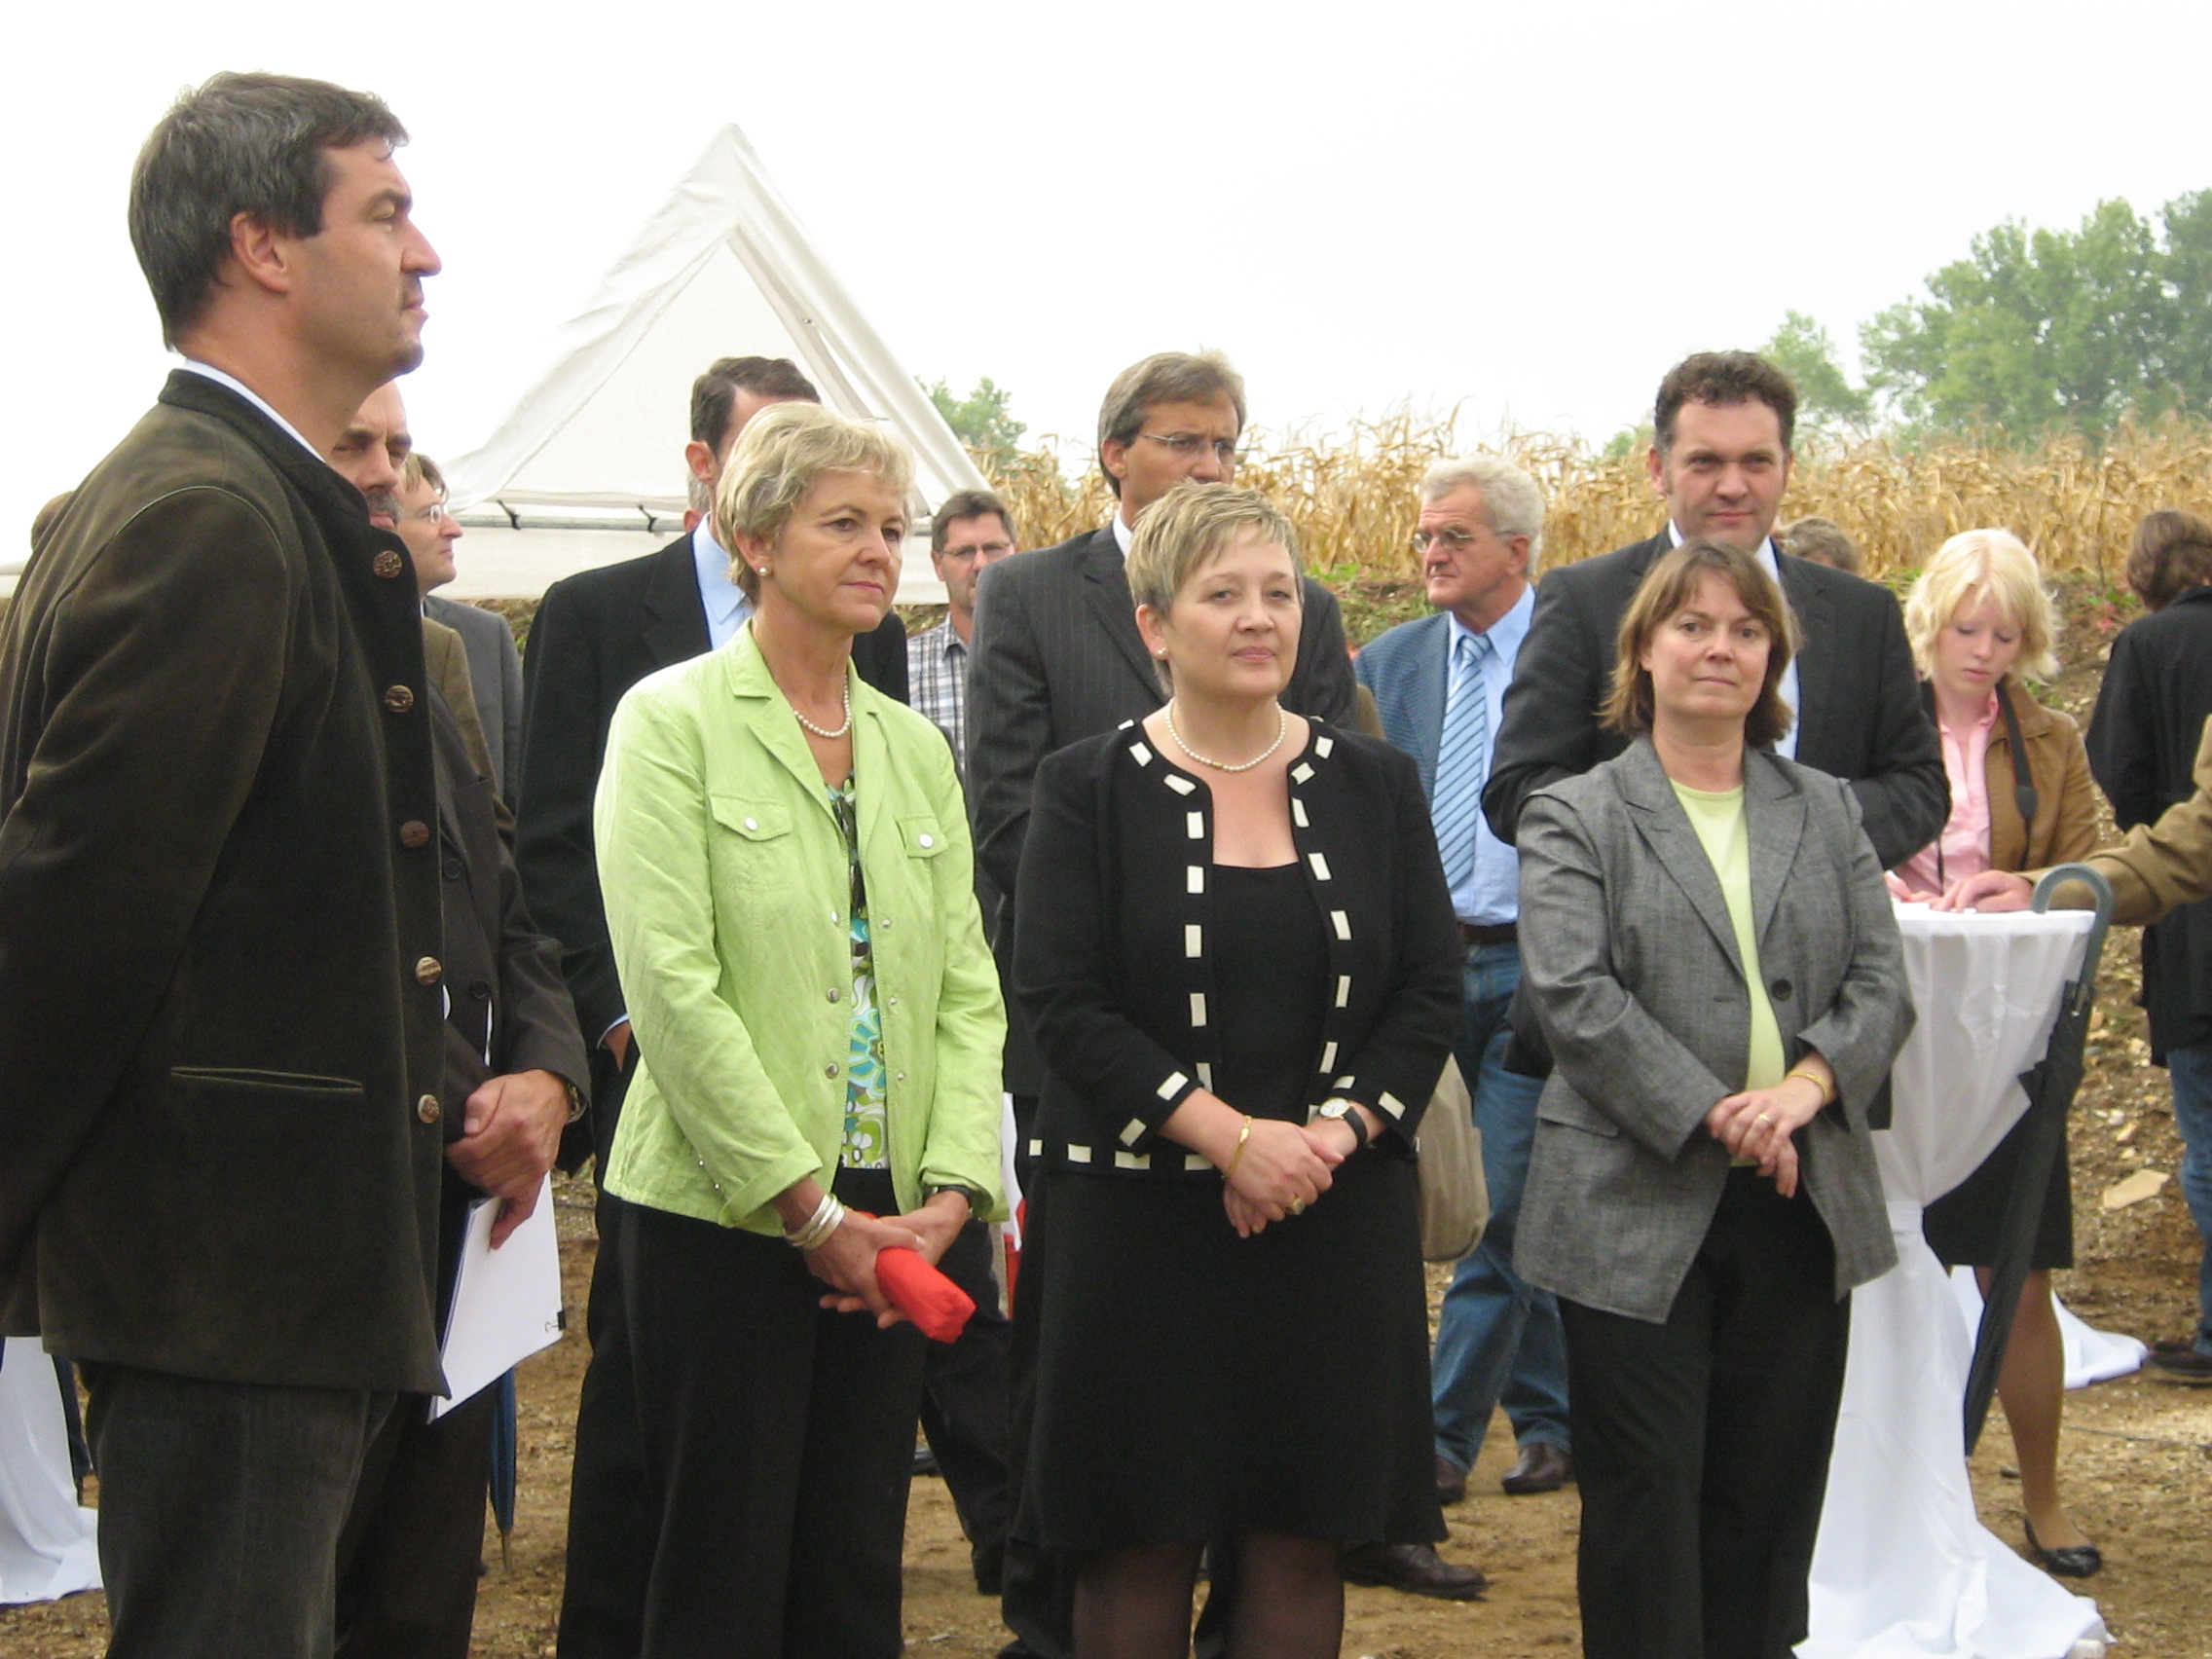 Umweltminister Markus Söder links im Bild mit mehreren Kommunalpolitikern. Im Hintergrund ist die Spitze des Pavillons und ein Maisfeld zu sehen.